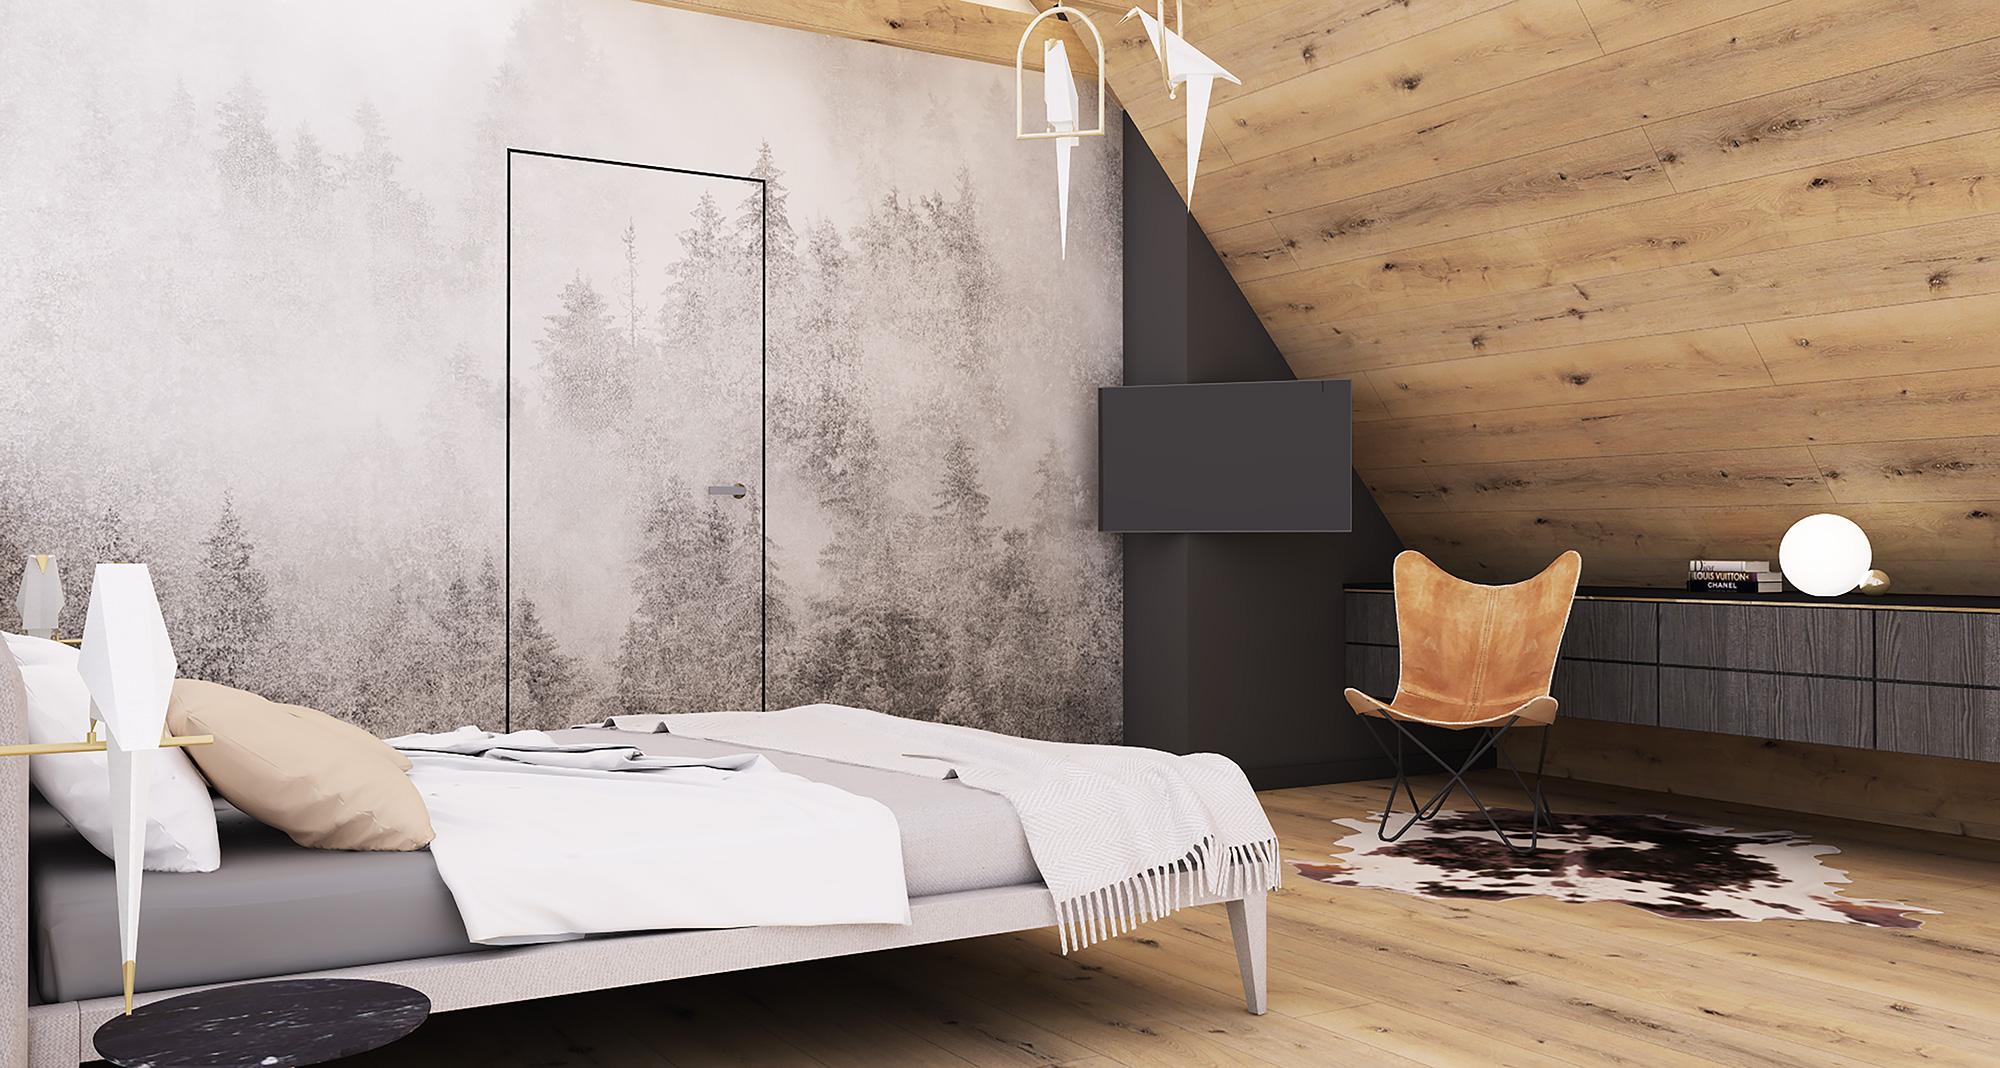 Bedroom design – Private project by Ewa Studio Wnetrz